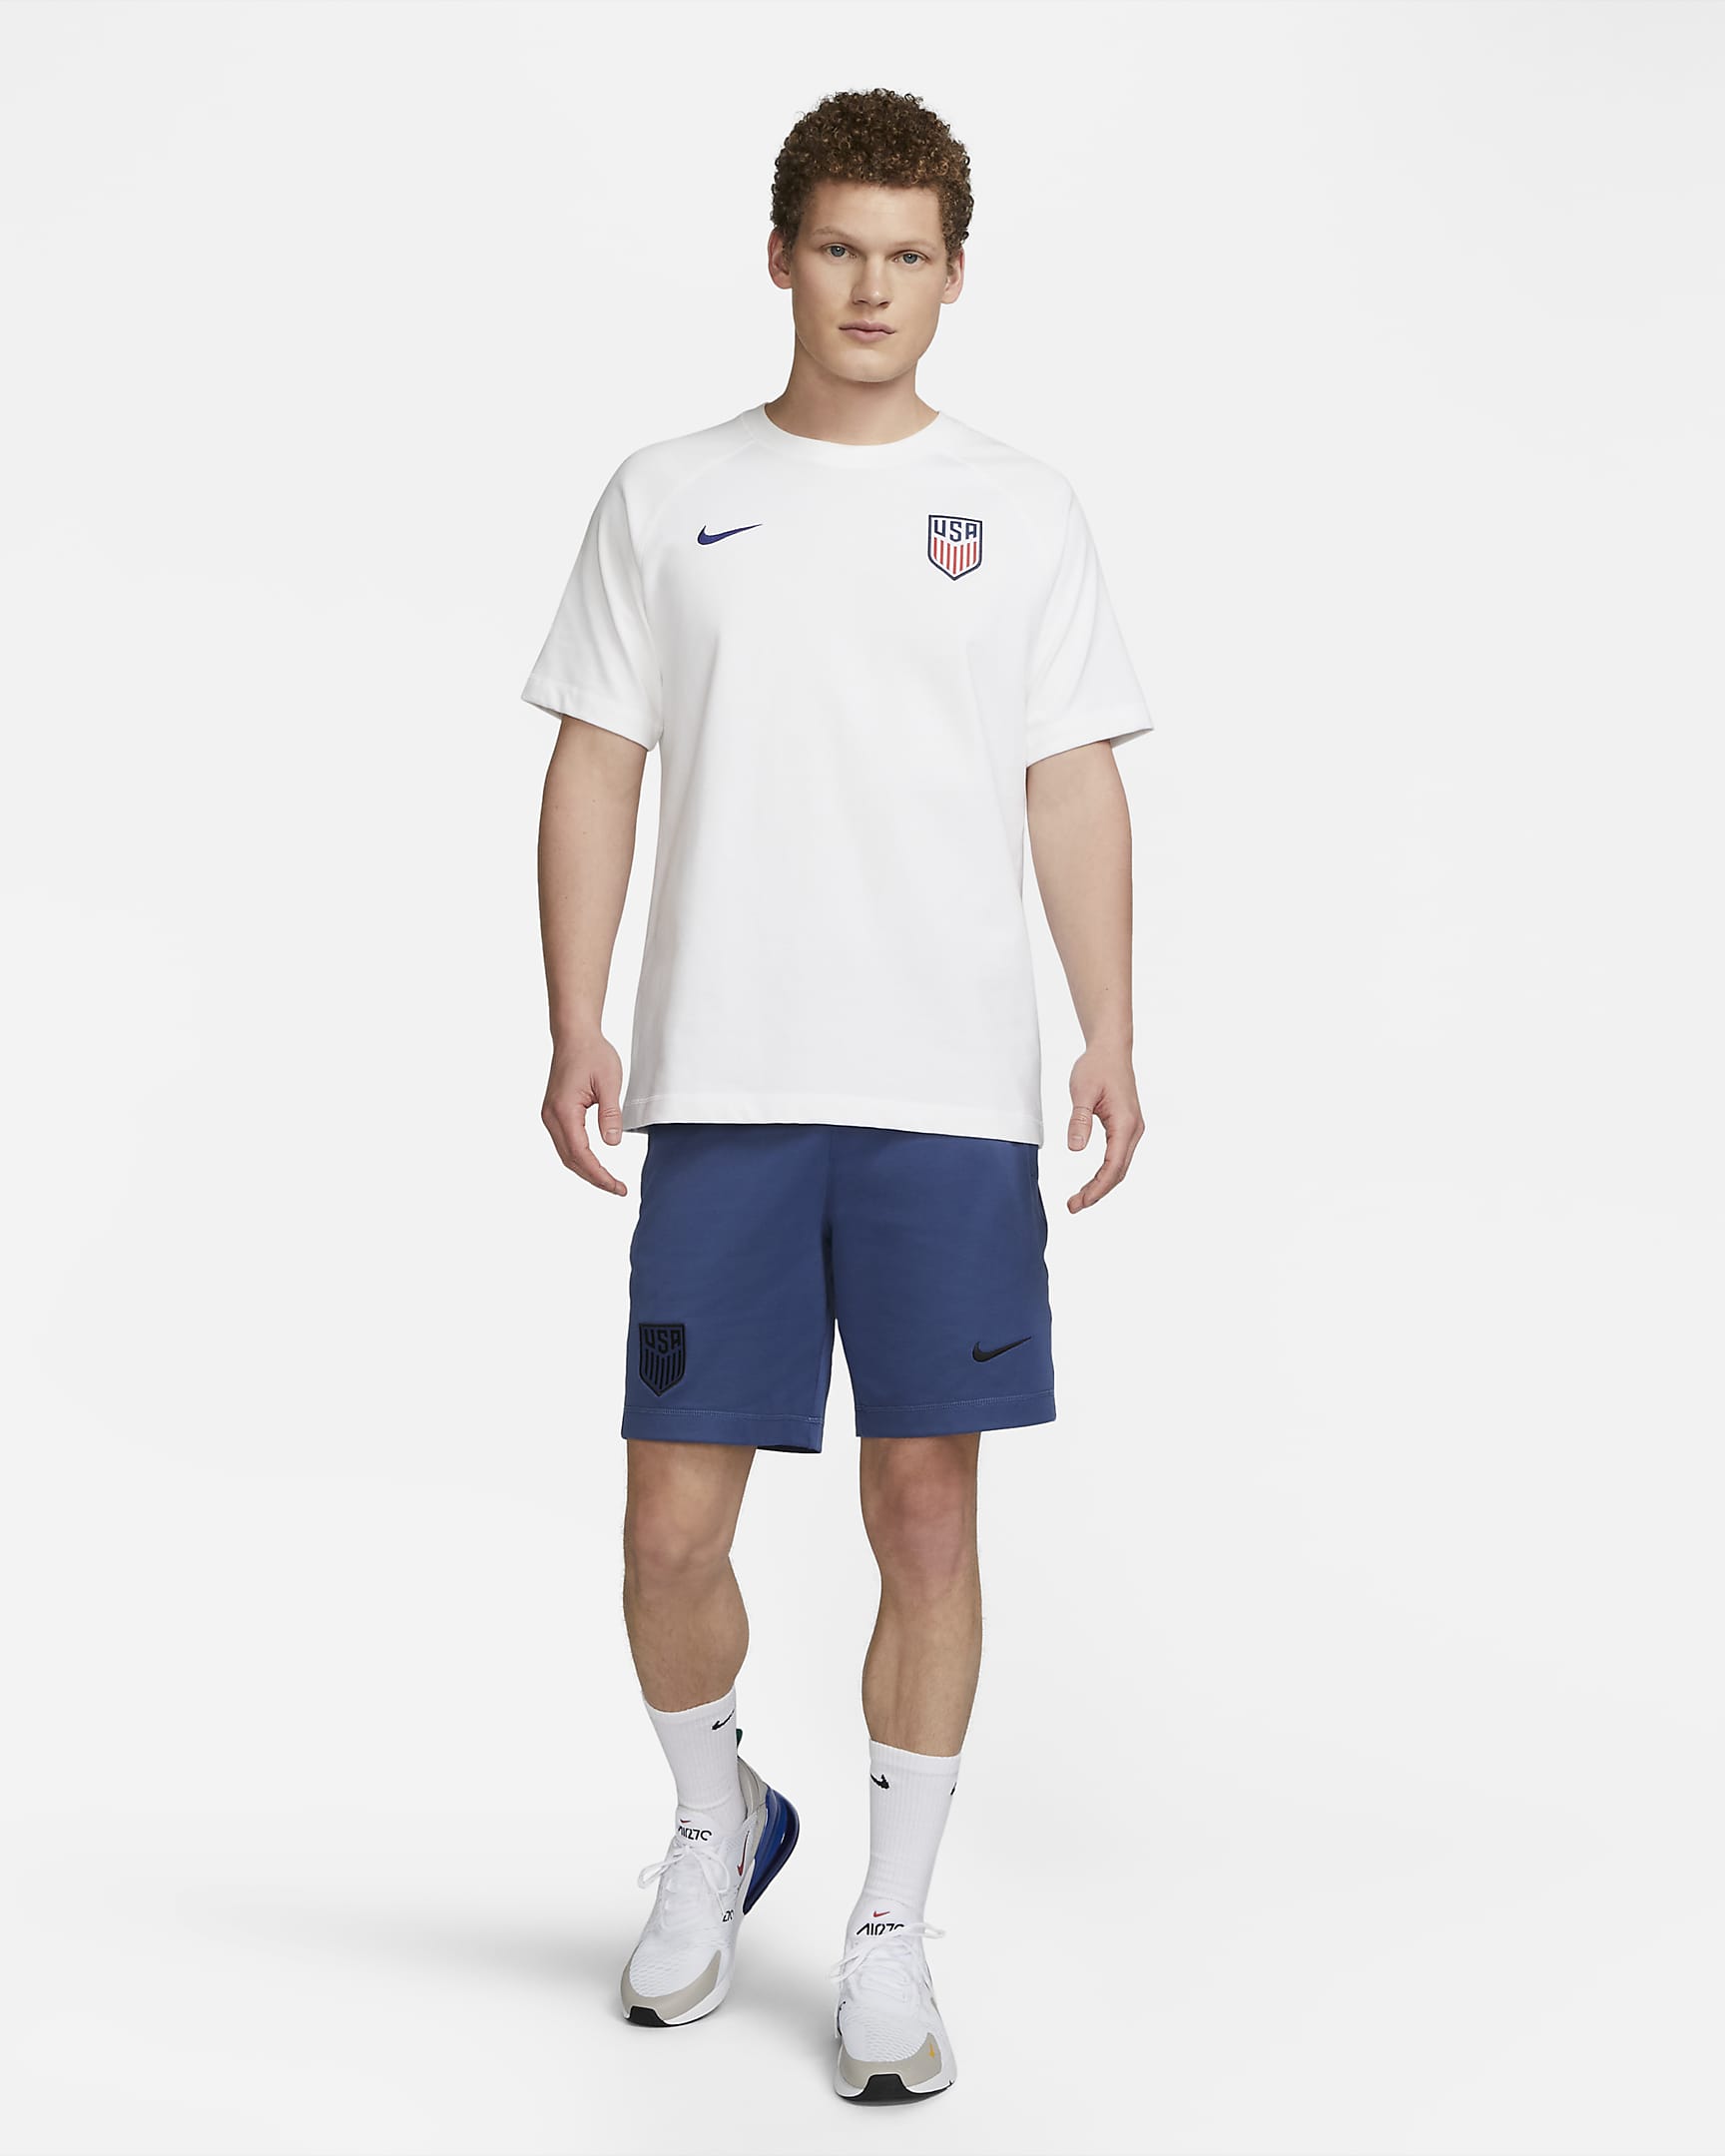 U.S. Travel Men's Nike Knit Soccer Shorts. Nike.com